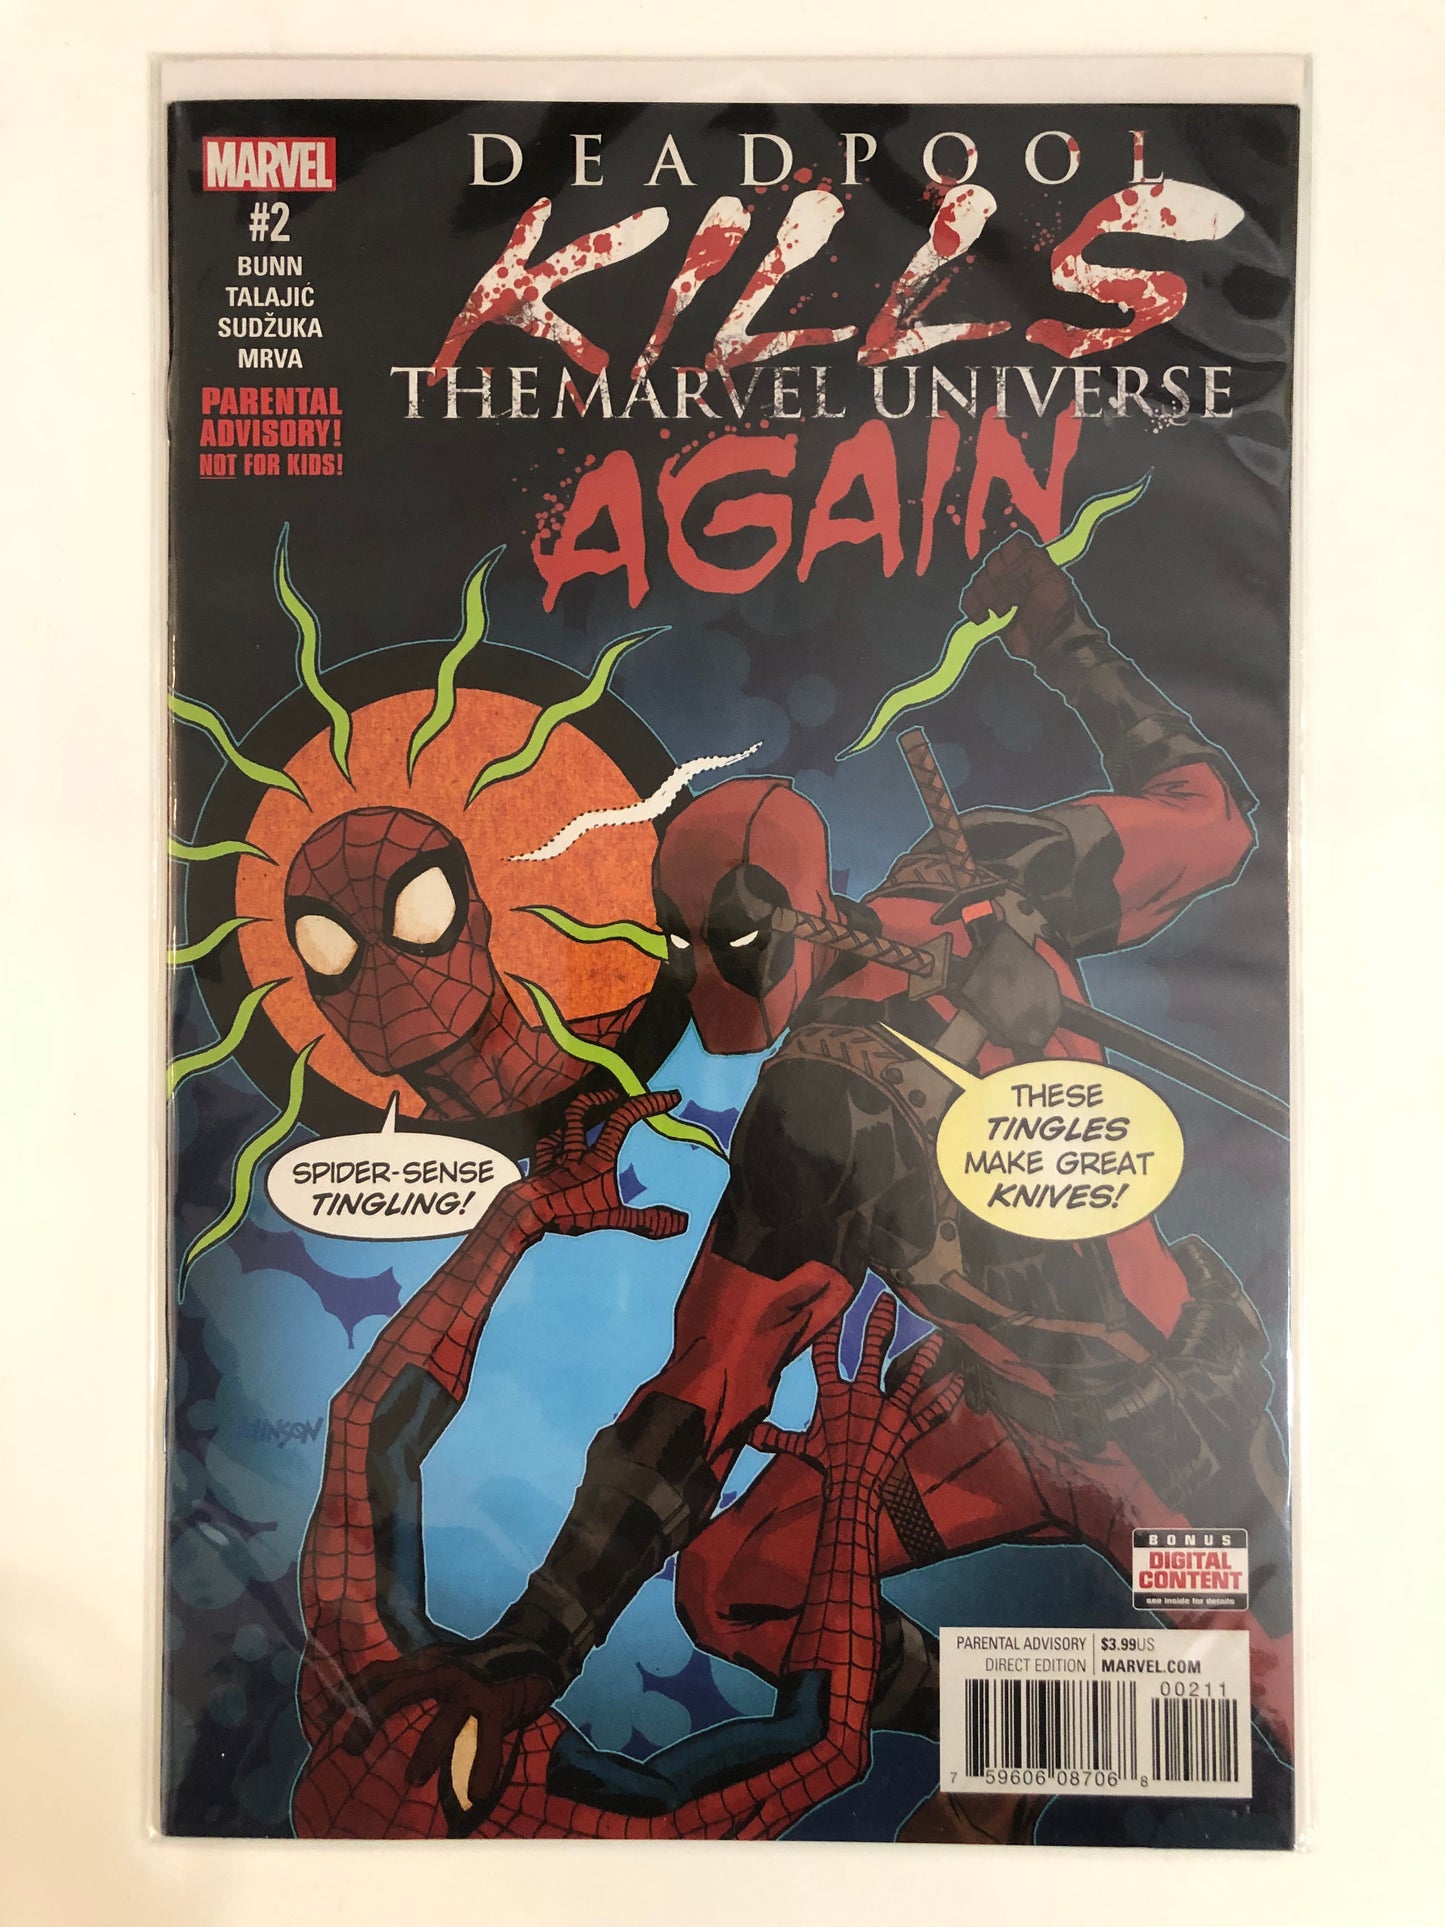 Deadpool Kills The Marvel Universe Again #1-5